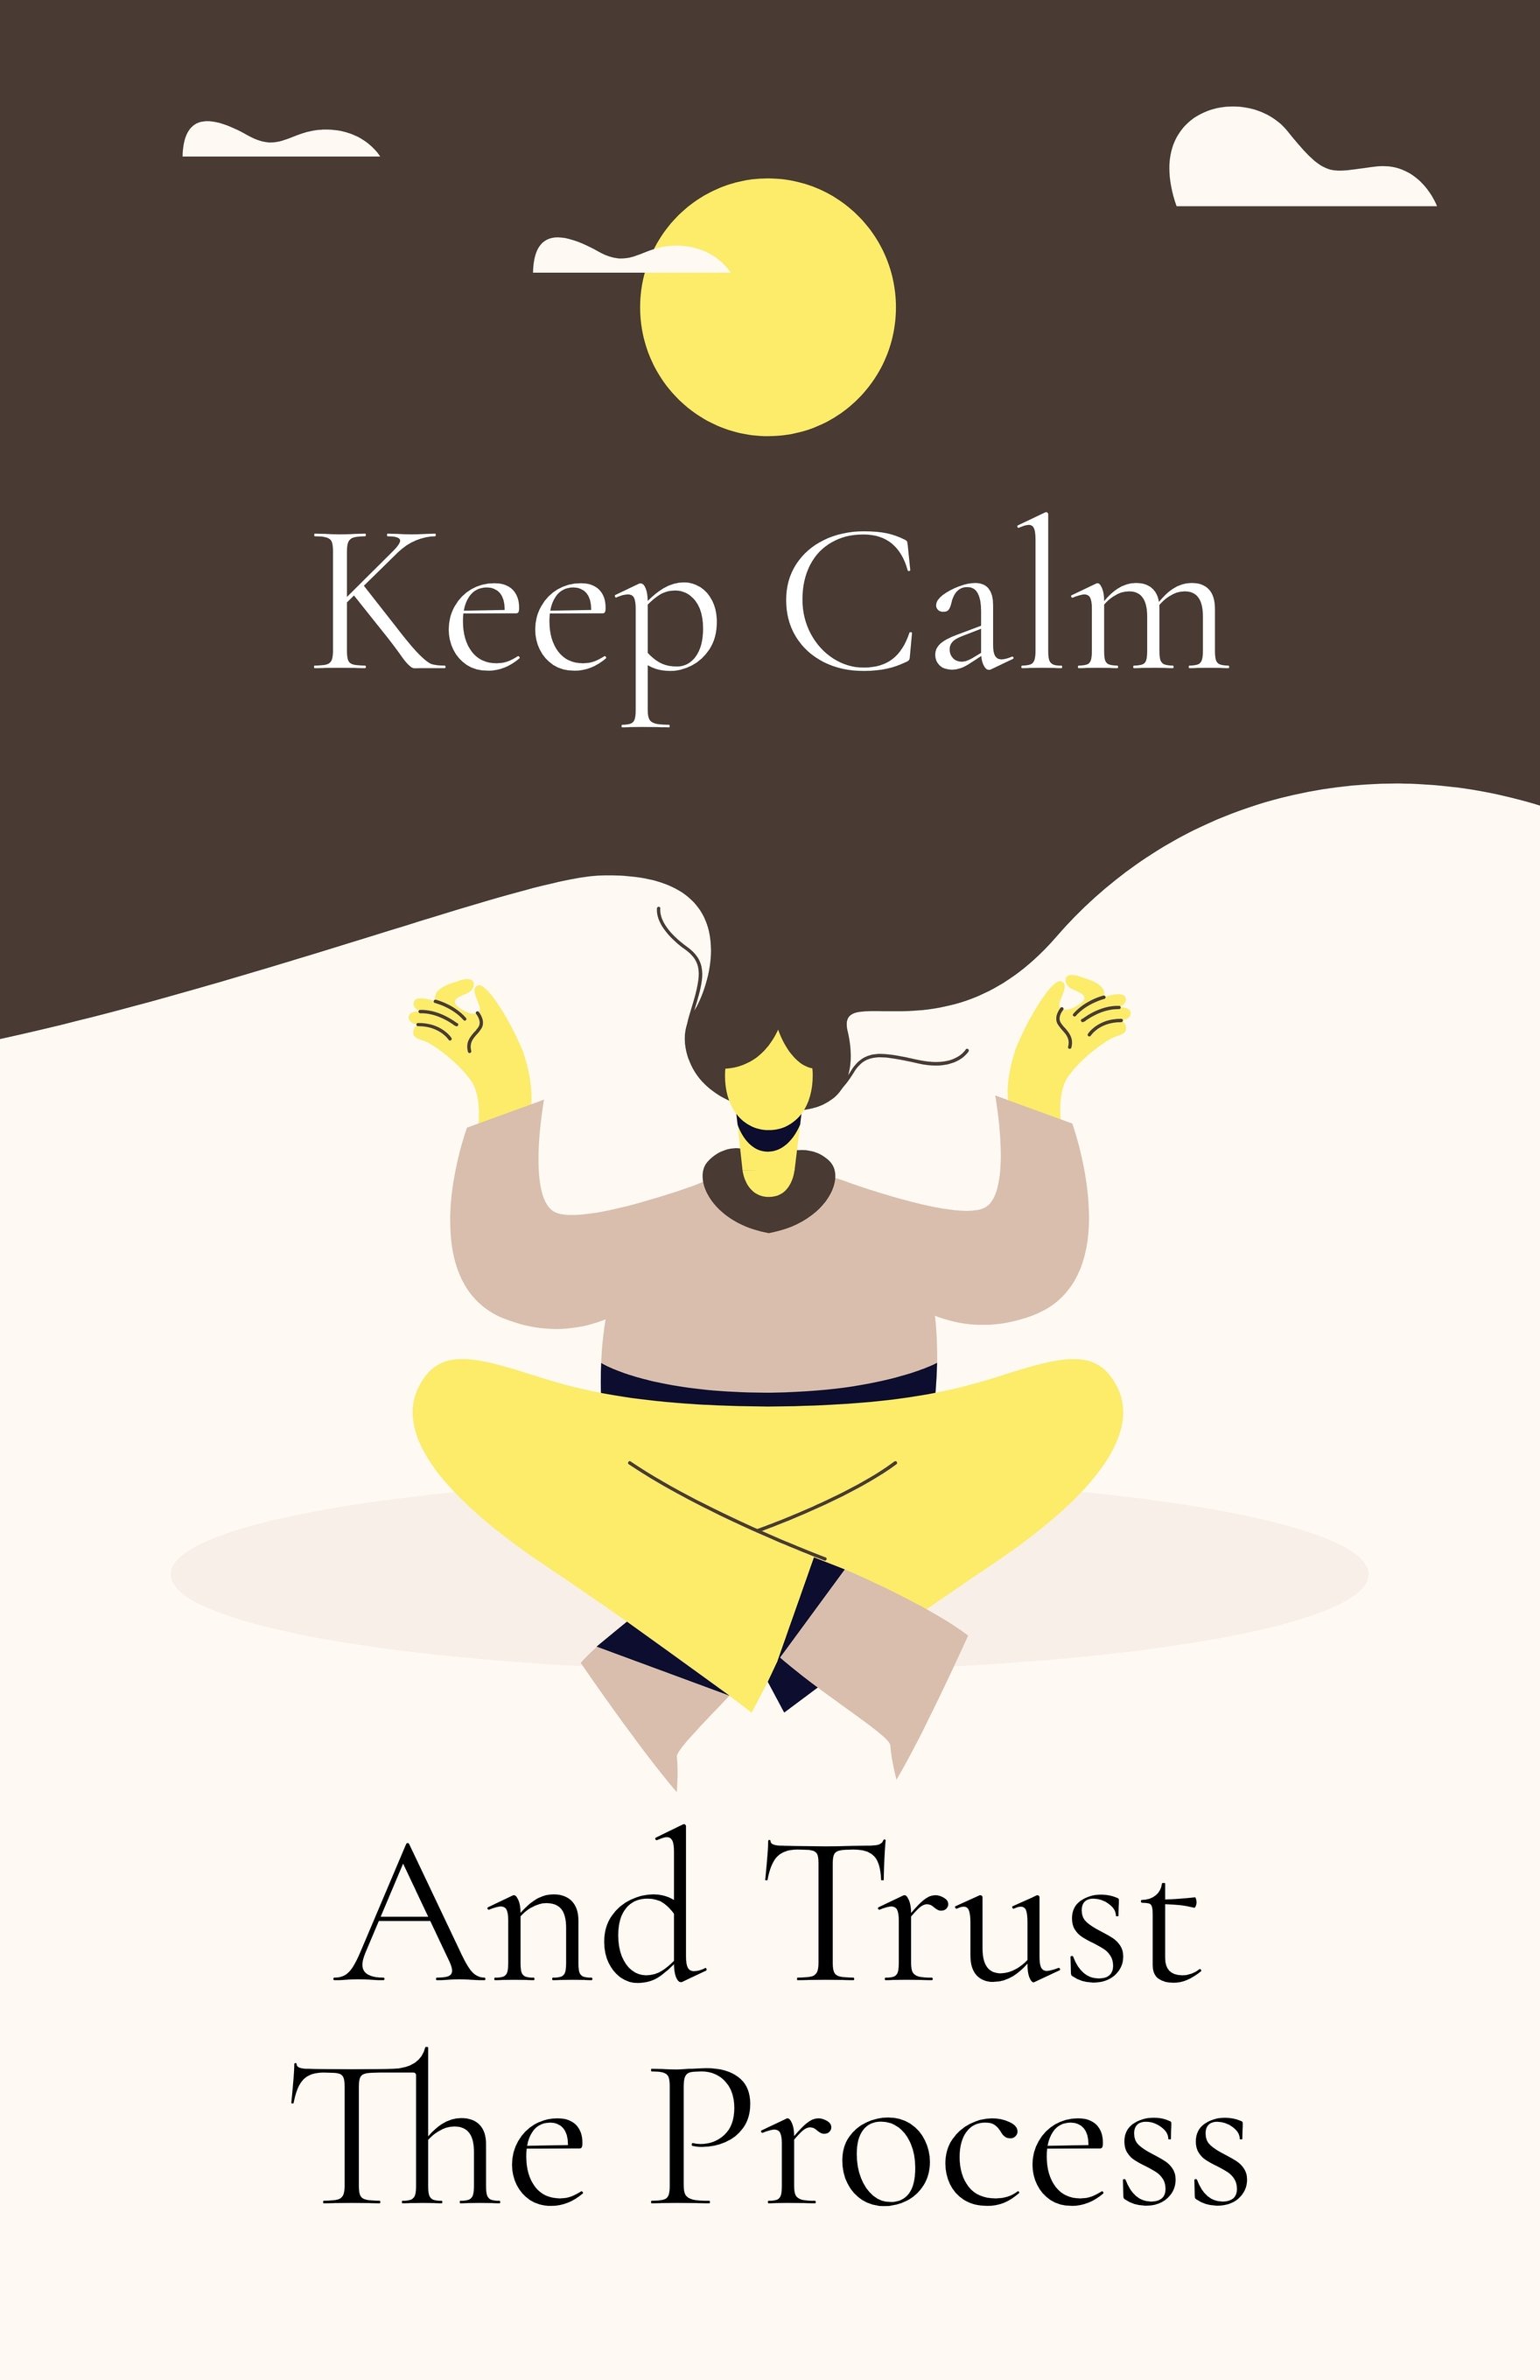 Keep Calm Motivational Poster Template